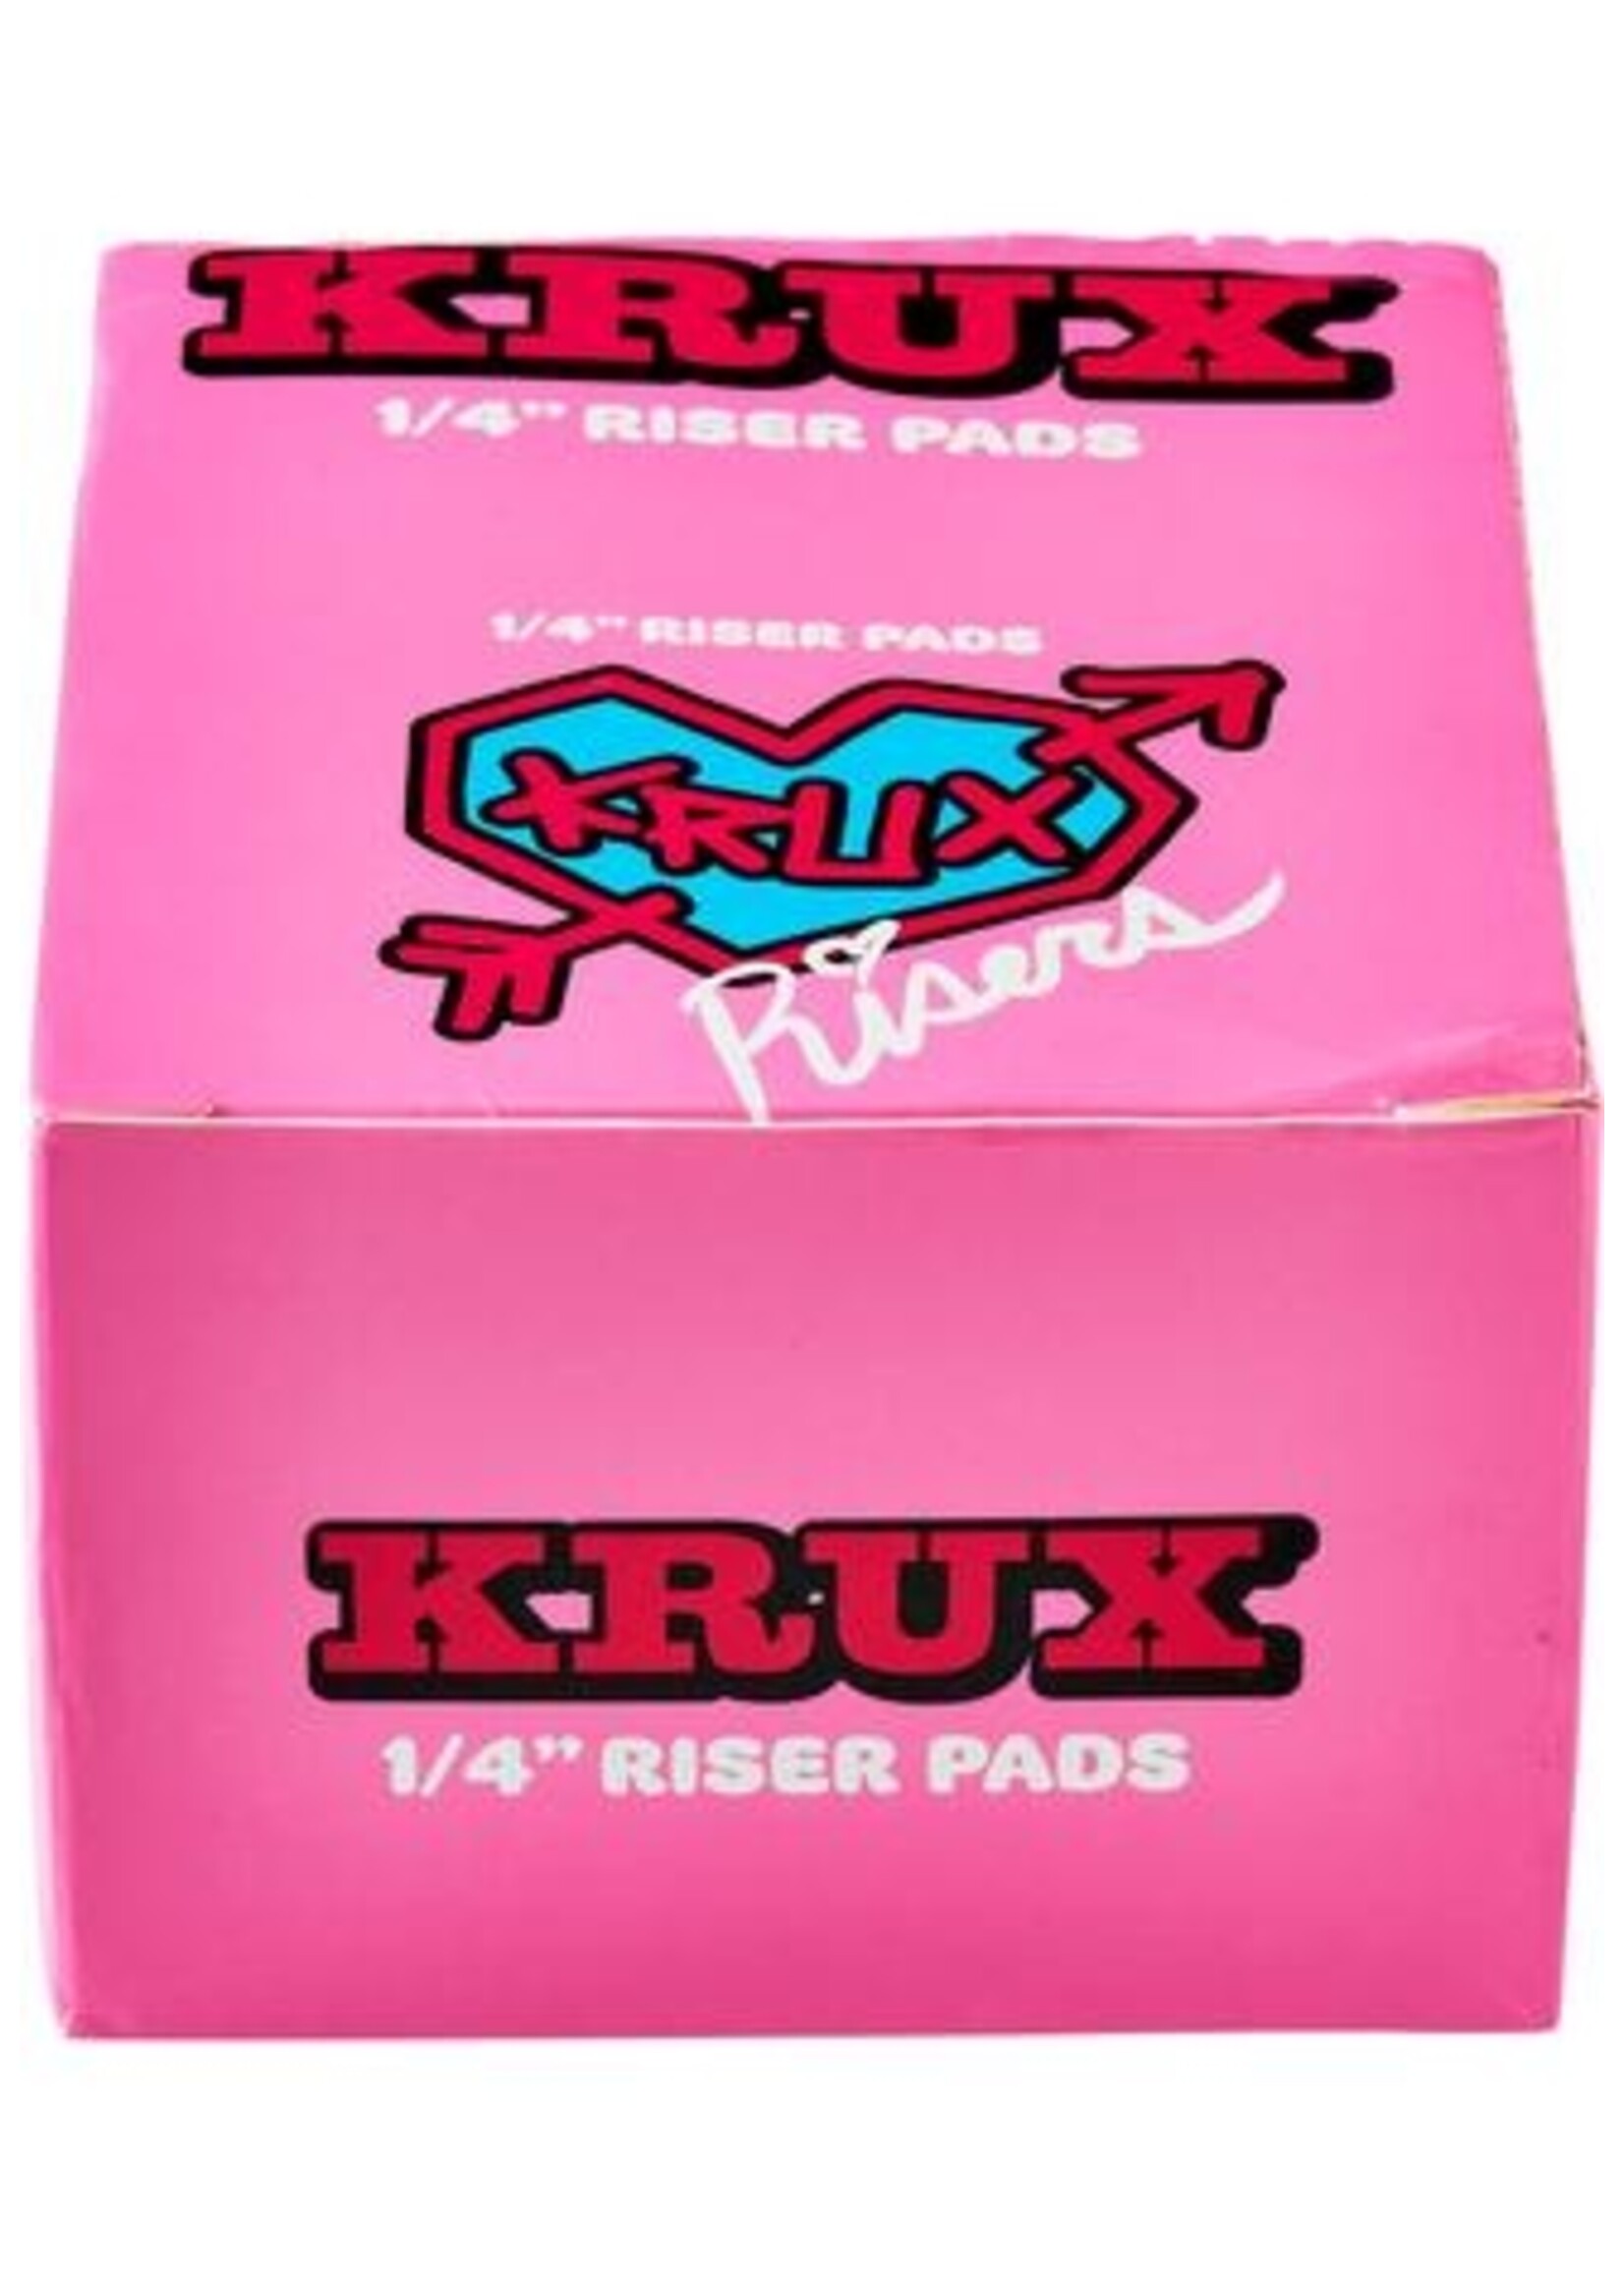 krux Riser-/Shockpads 1/4"